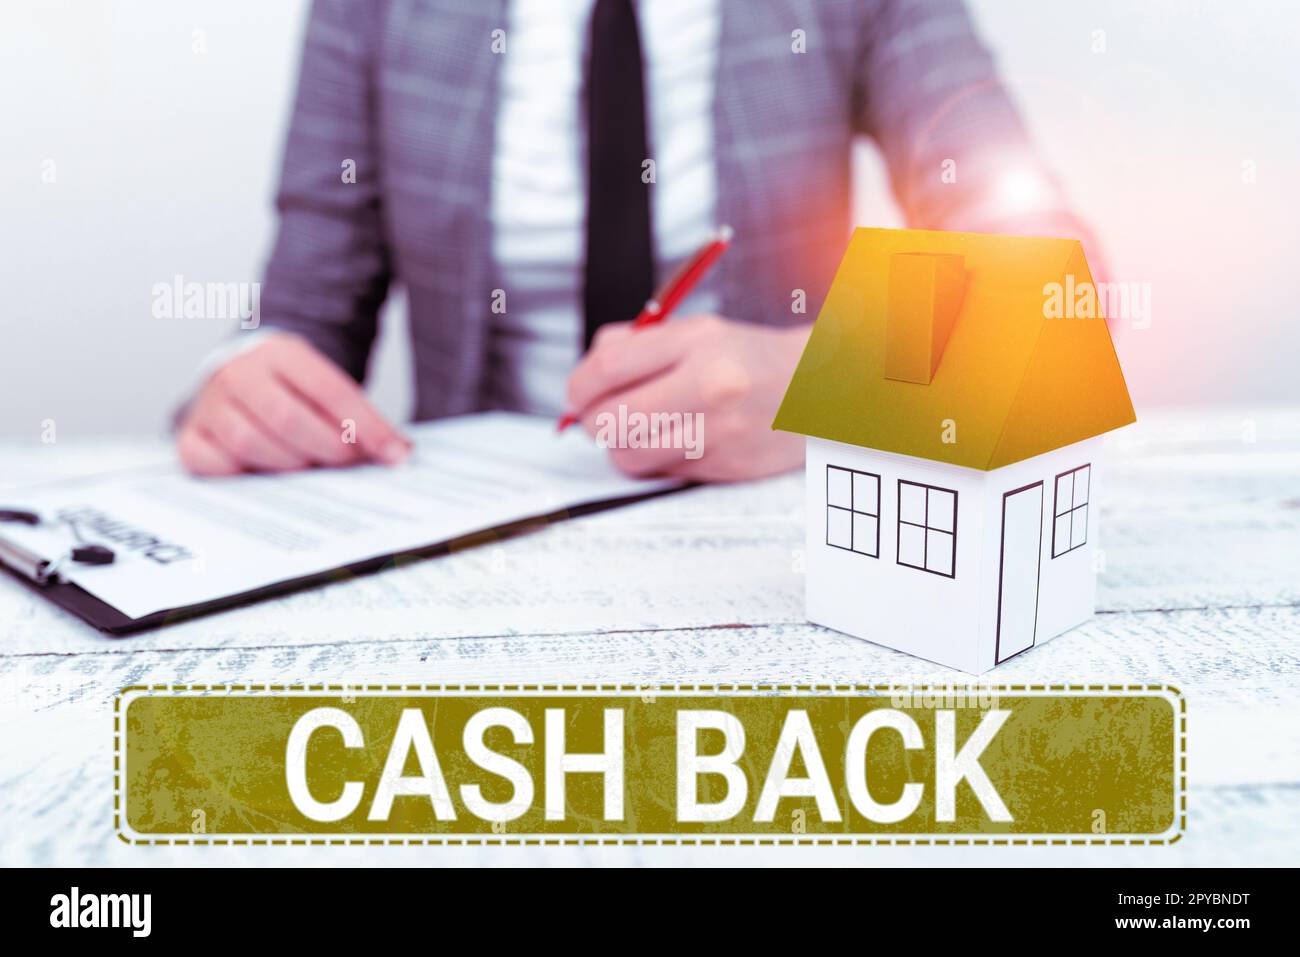 Konzeptionelle Darstellung – Cashback. Ein Wort für Anreiz bot Käufern bestimmte Produkte an, mit denen sie Bargeld erhielten Stockfoto